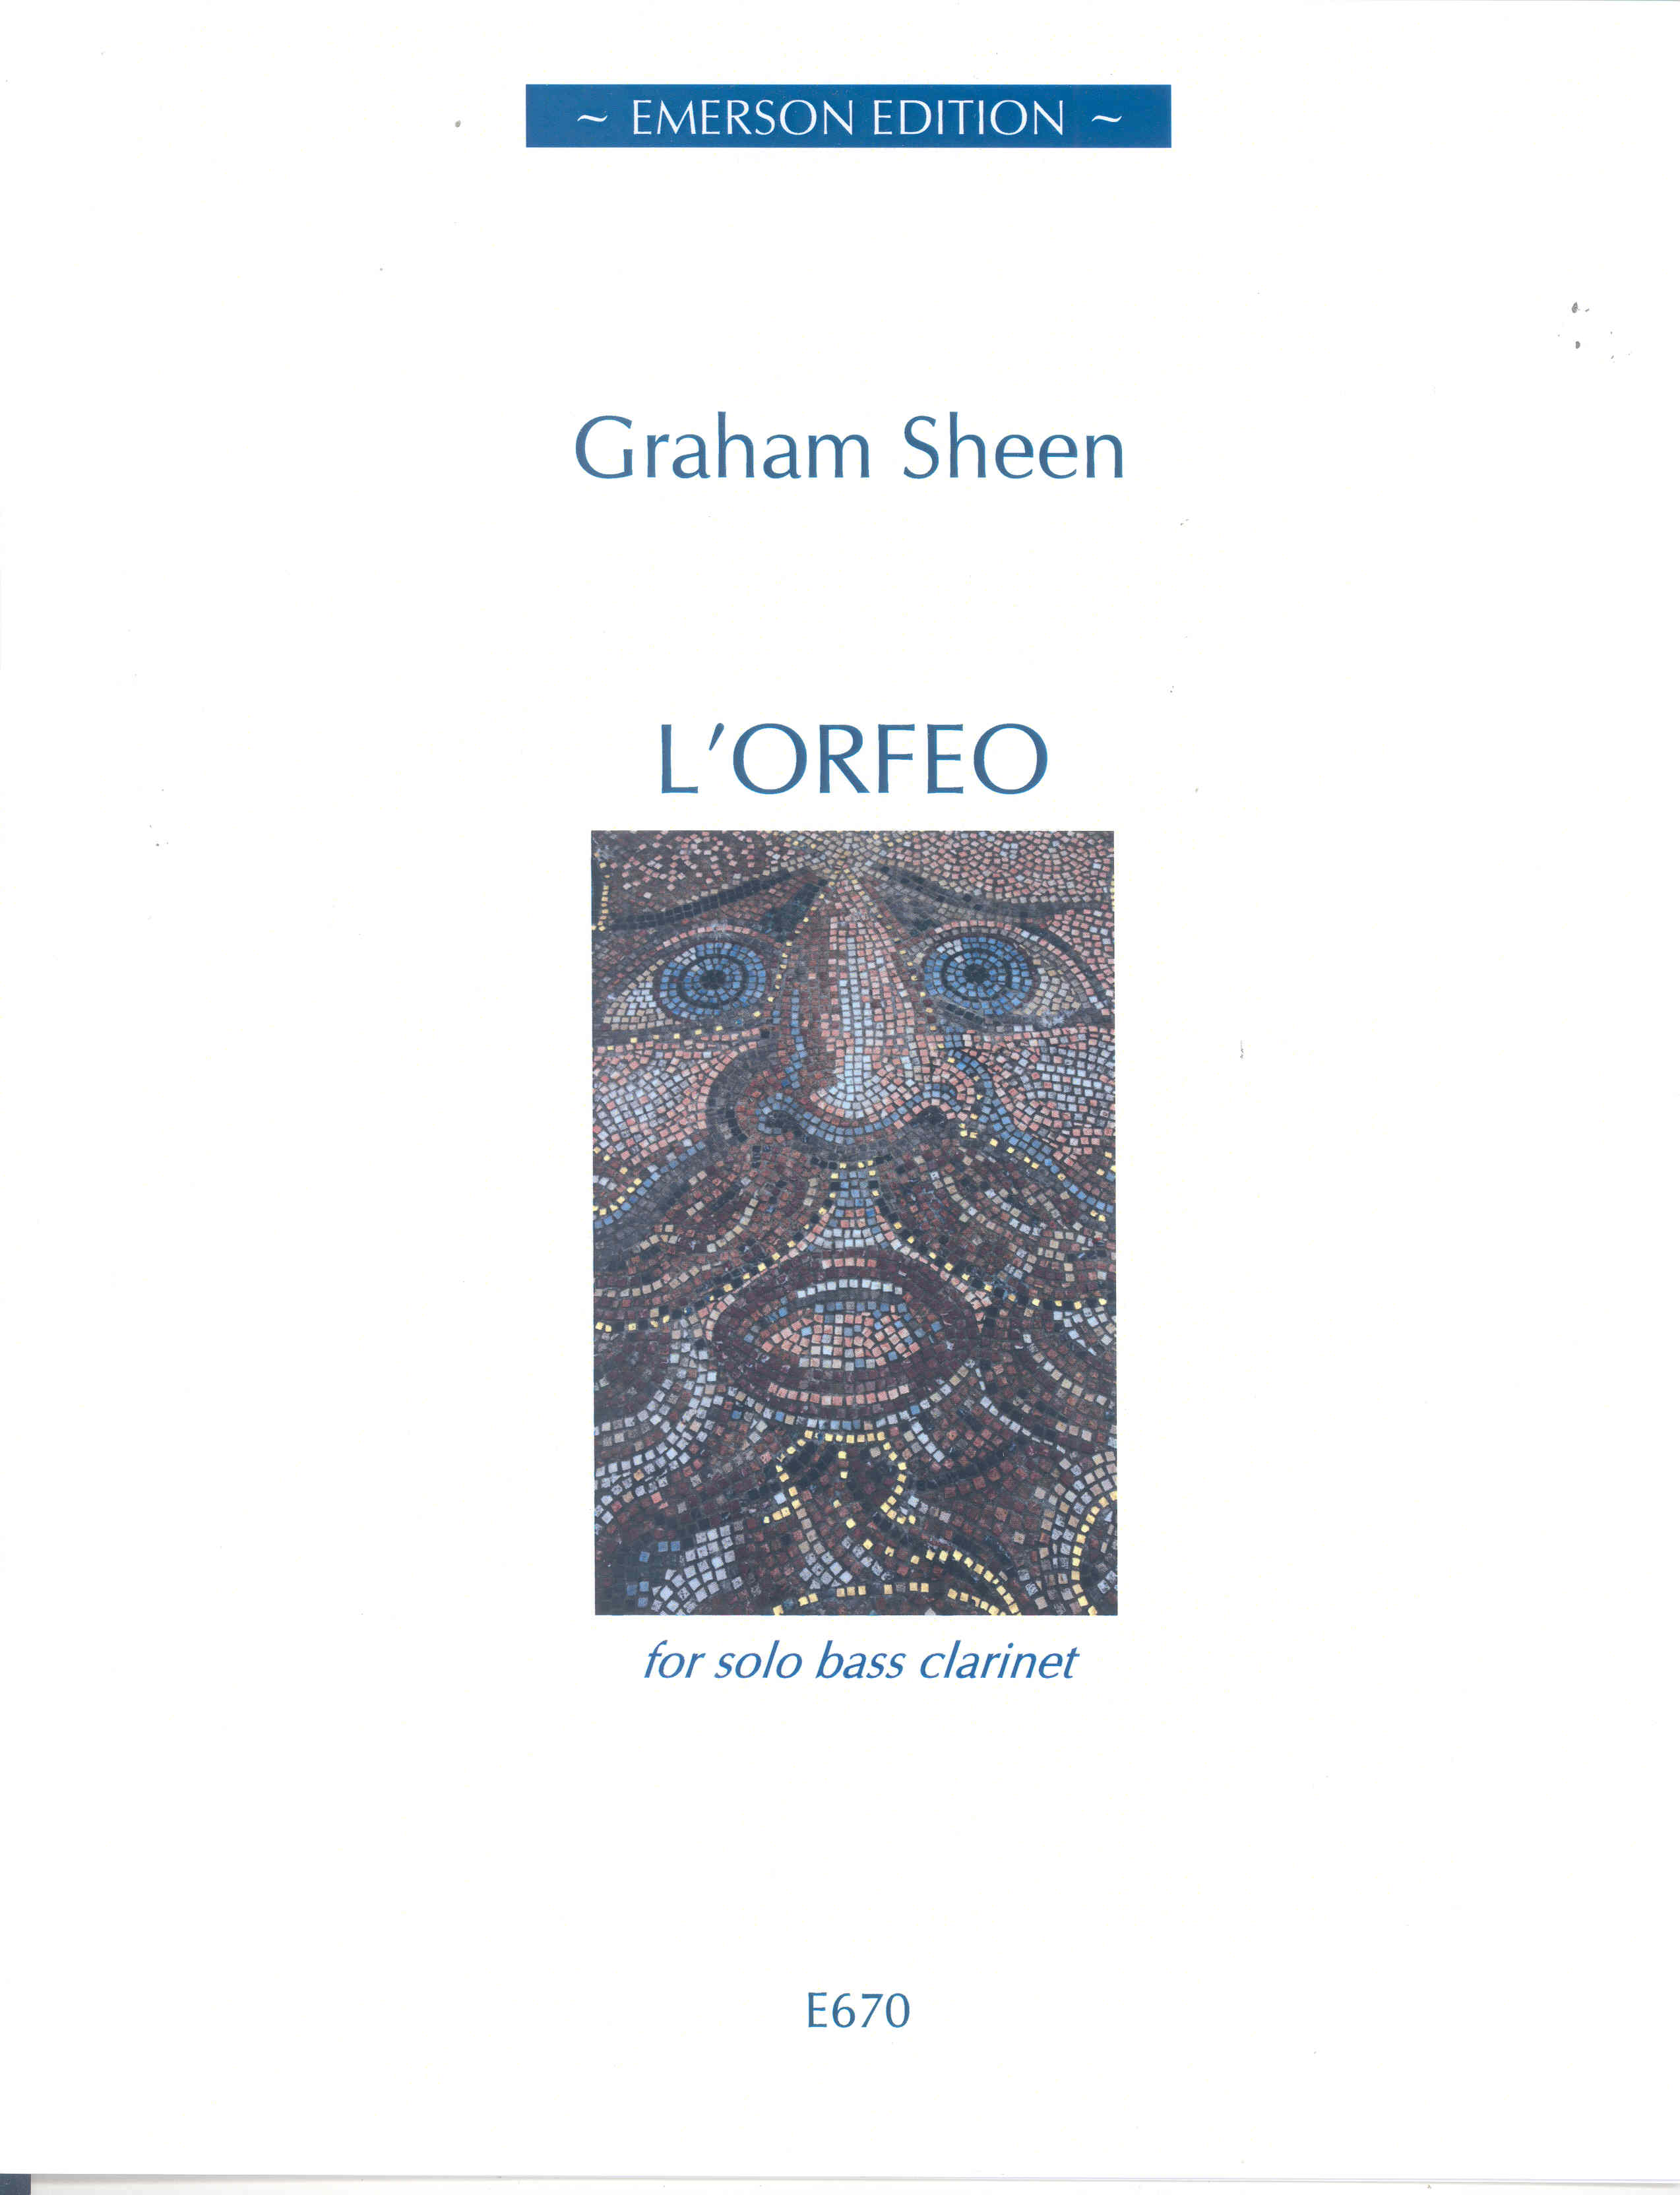 Sheen Lorfeo Bass Clarinet Sheet Music Songbook